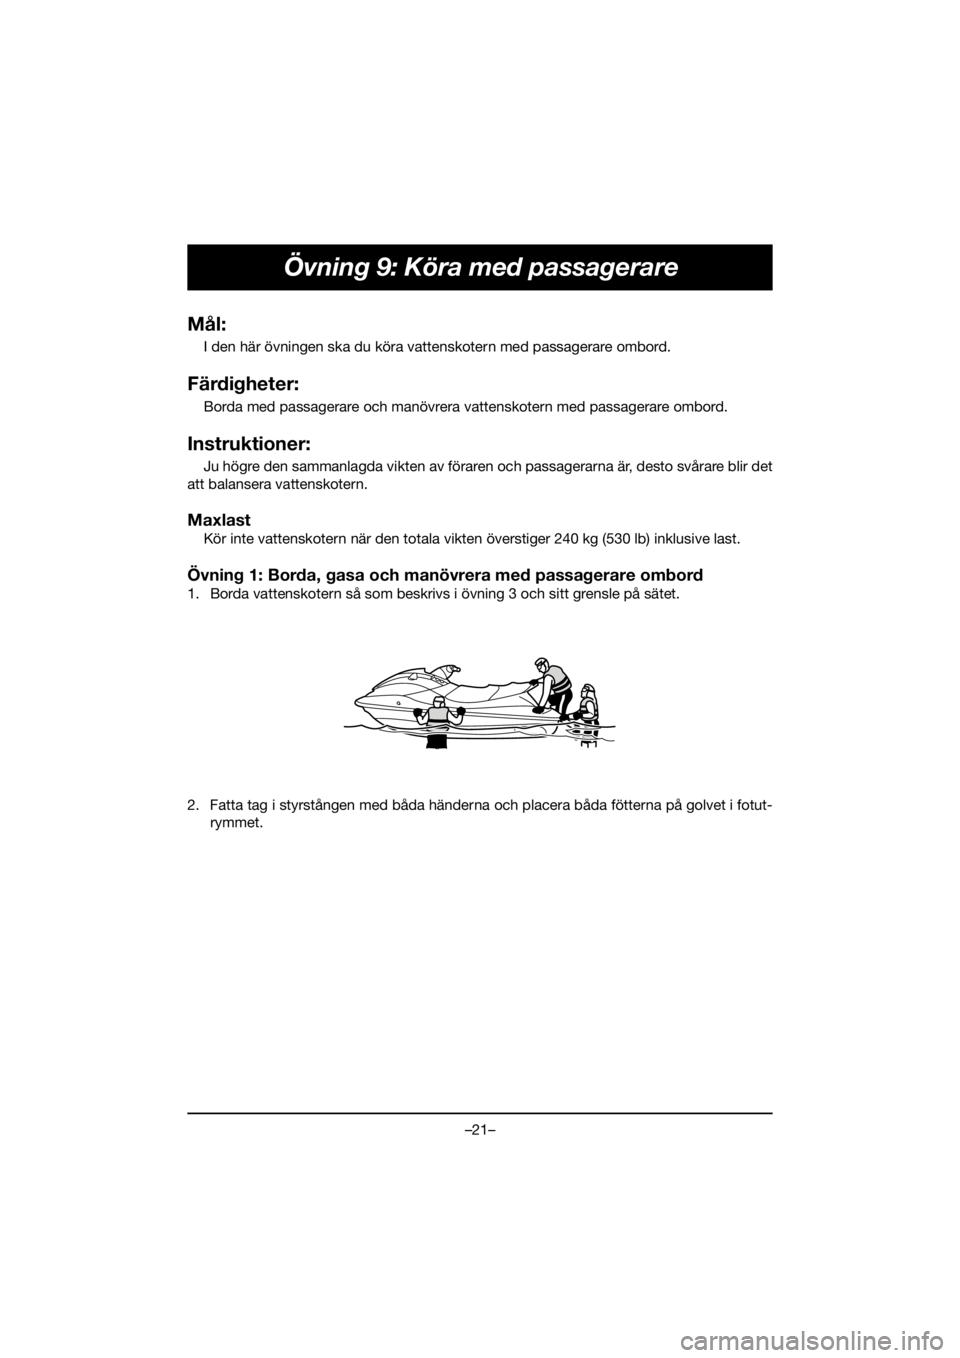 YAMAHA GP1800R SVHO 2020  Bruksanvisningar (in Swedish) –21–
Övning 9: Köra med passagerare
Mål:
I den här övningen ska du köra vattenskotern med passagerare ombord.
Färdigheter:
Borda med passagerare och manövrera vattenskotern med passagerare